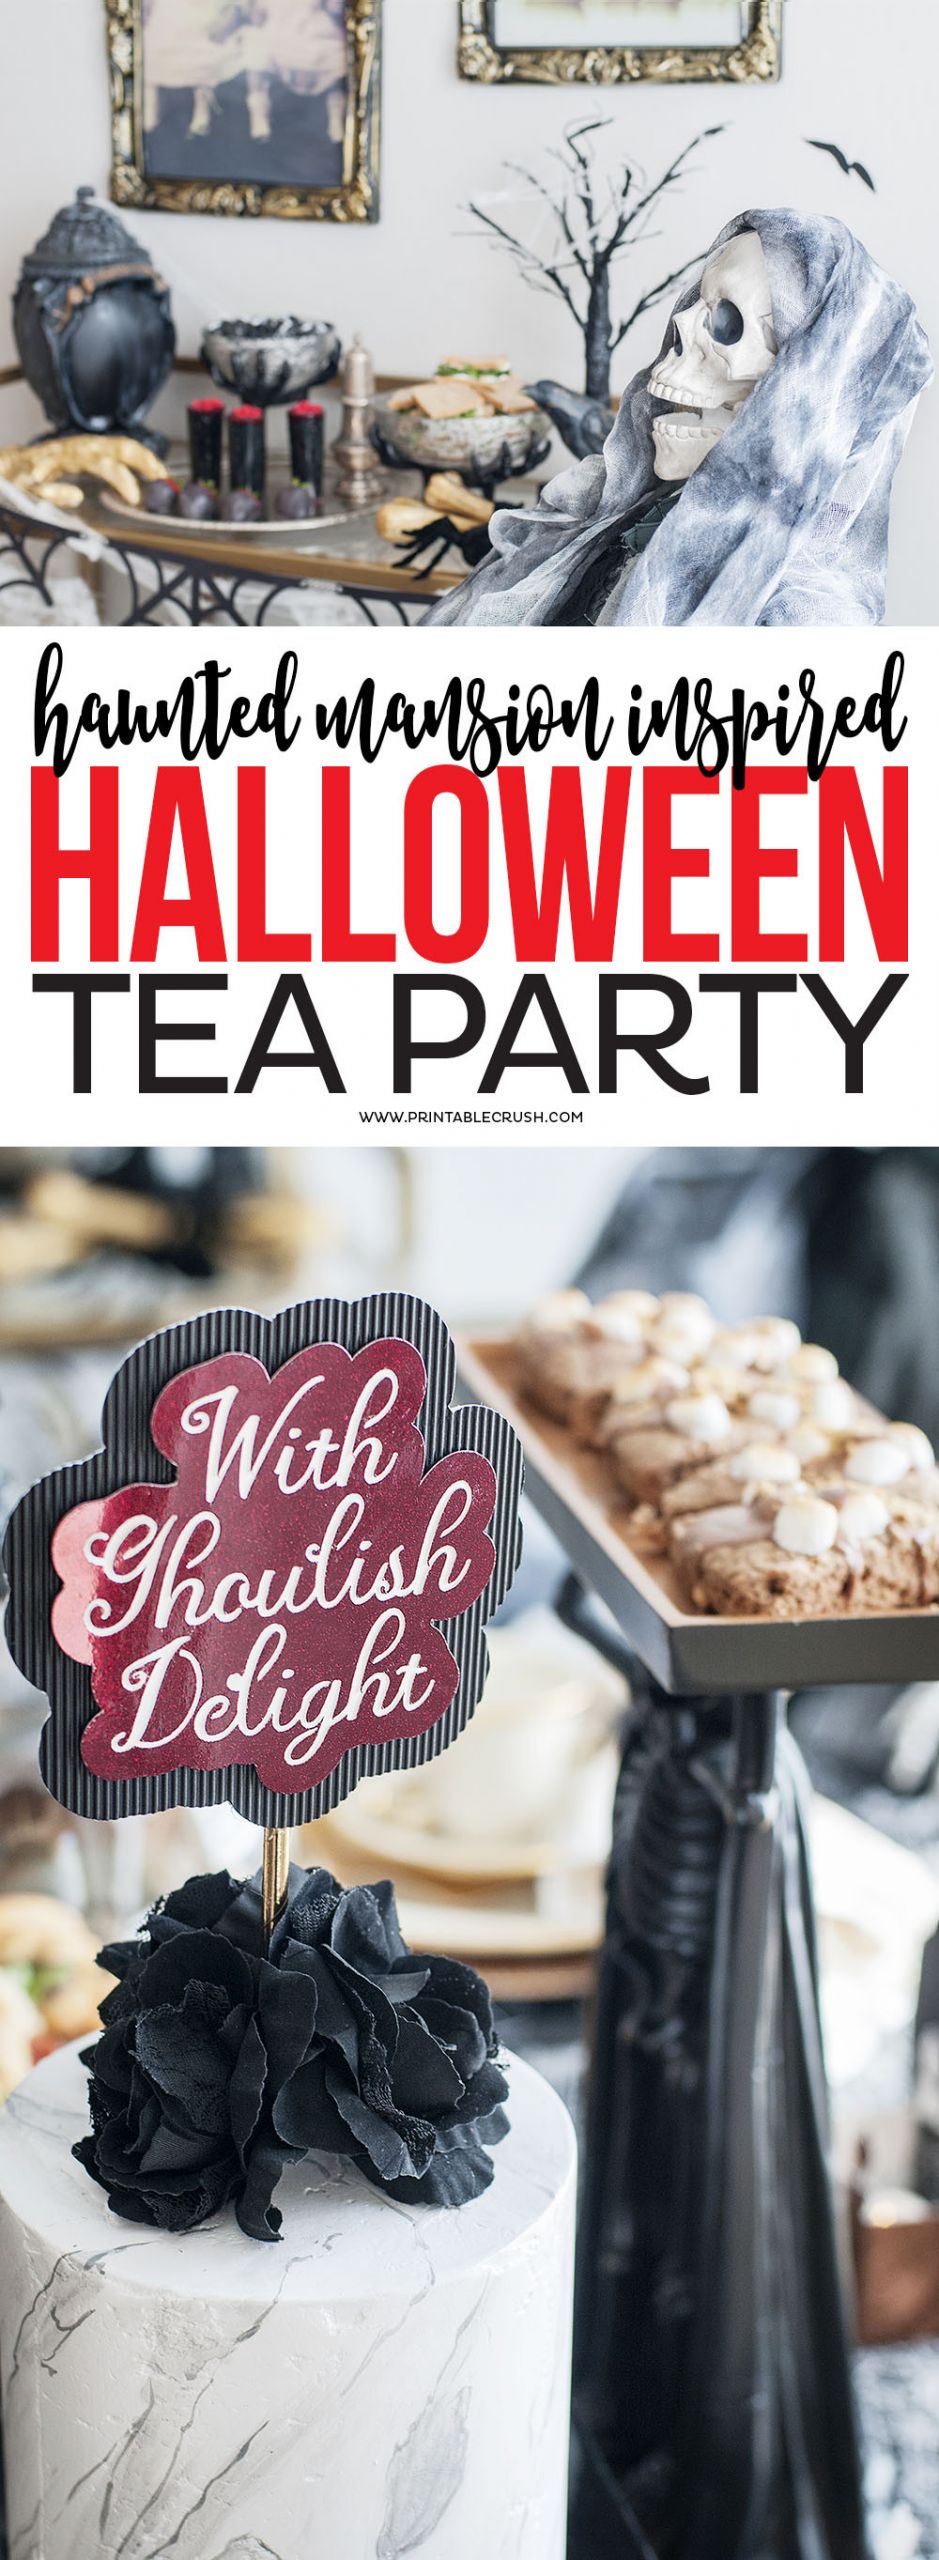 Halloween Tea Party Ideas
 Haunted Mansion Halloween Tea Party Ideas Printable Crush